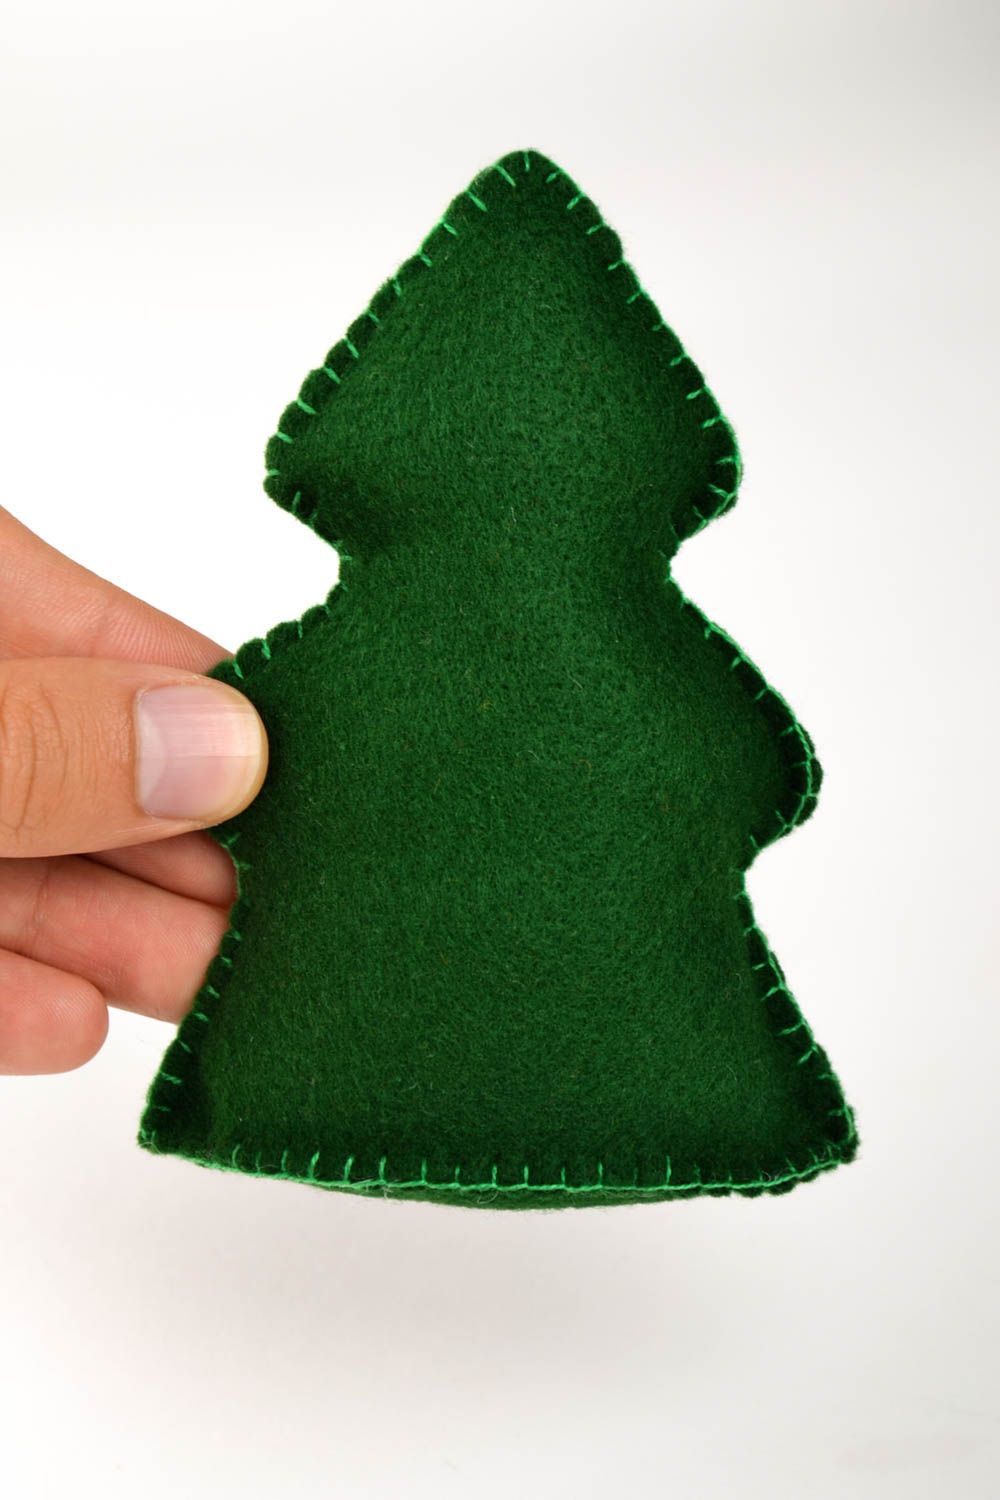 Игрушка ручной работы зеленая елка фетровая игрушка для детей декор для дома фото 5